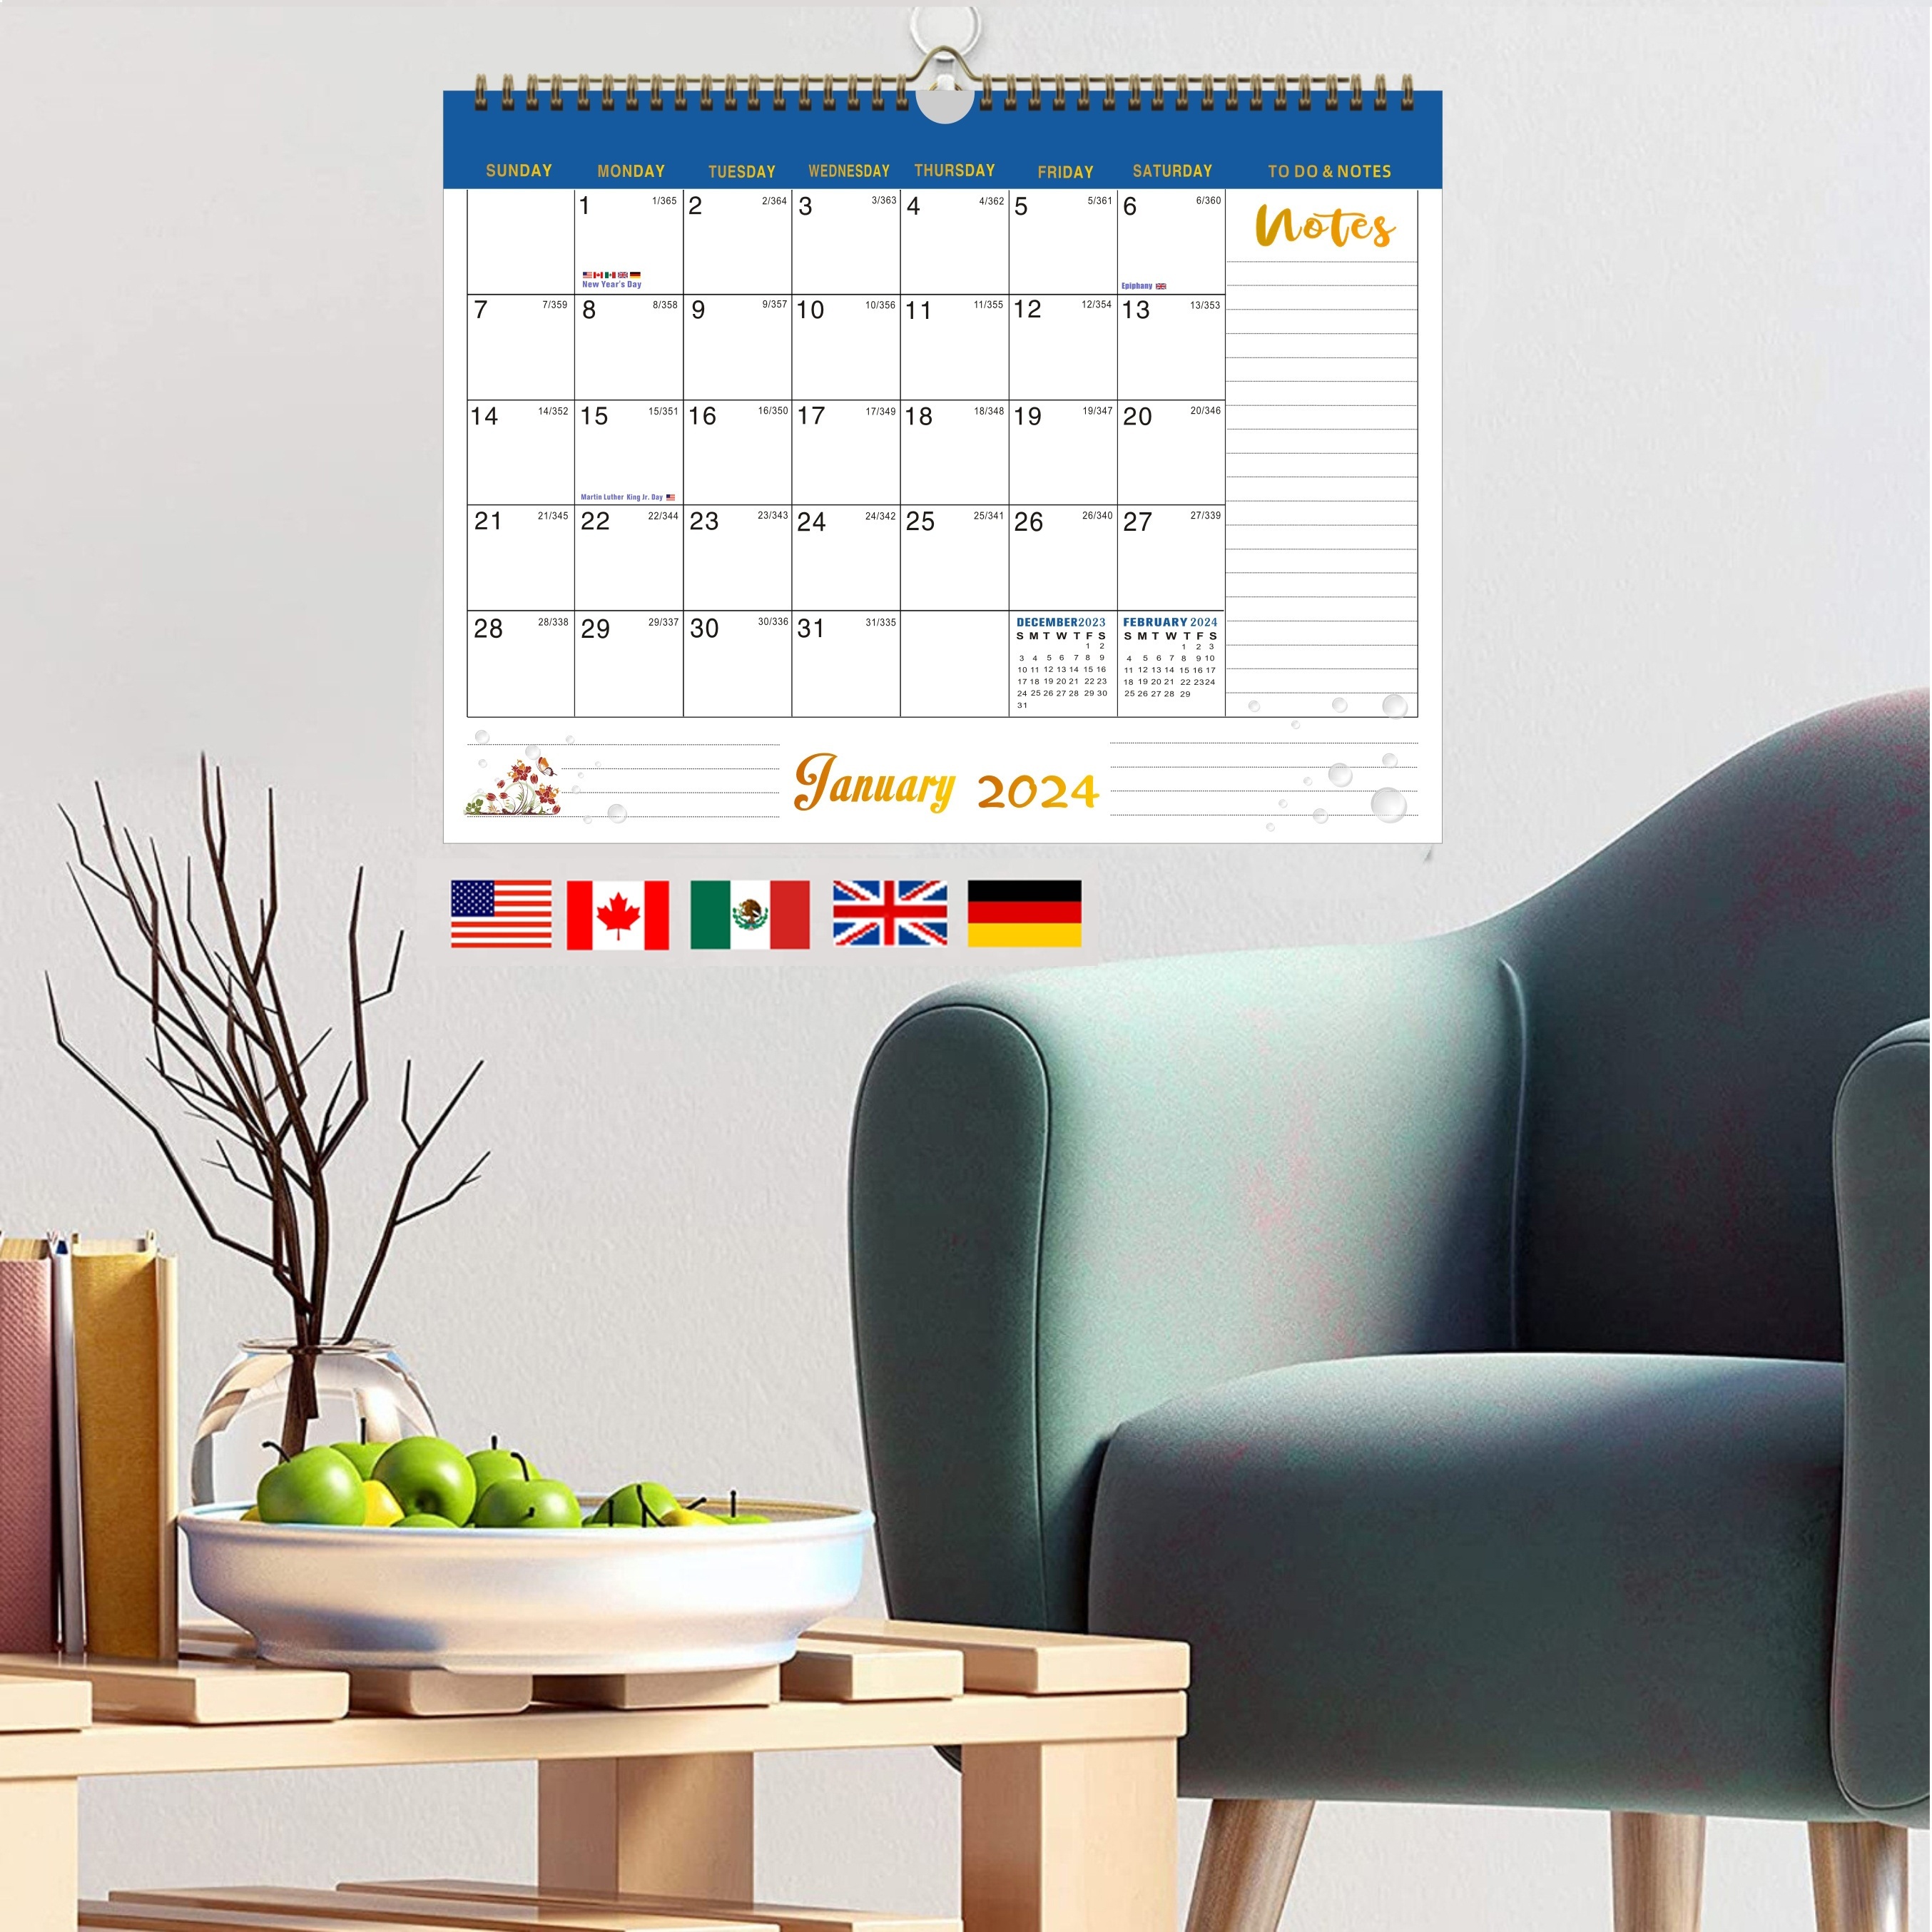  Calendario 2024 – Calendario de pared 2024, septiembre 2023 –  diciembre 2024, calendario de pared 2023-2024, calendario de 16 meses, 15 x  11.5 pulgadas, encuadernación de doble alambre + gancho para : Productos de  Oficina